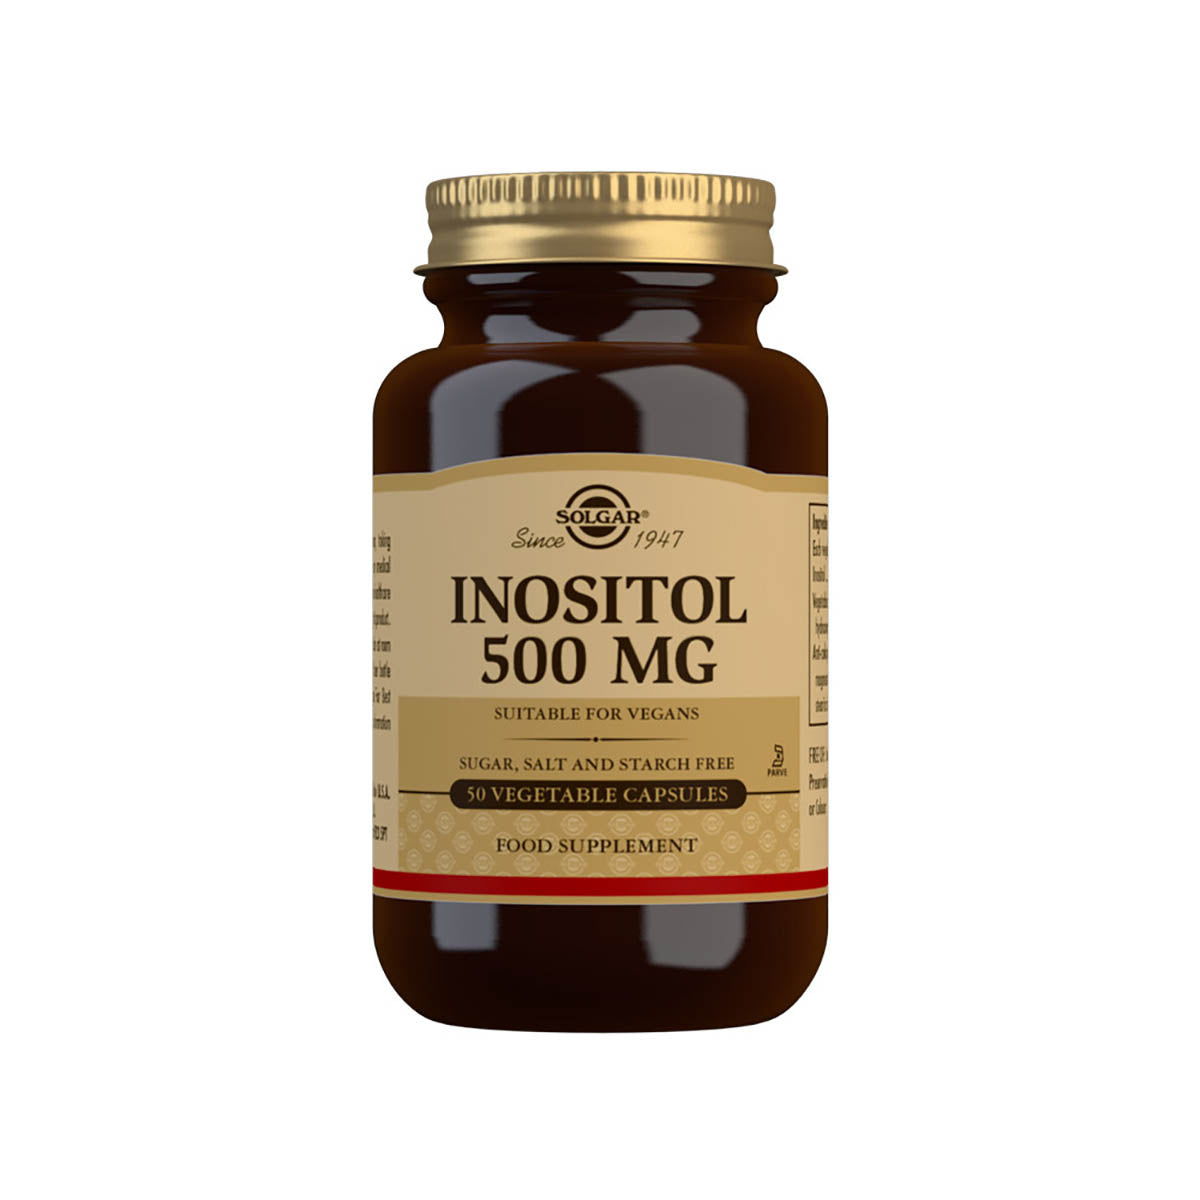 Solgar® Inositol 500 mg Vegetable Capsules - Pack of 50